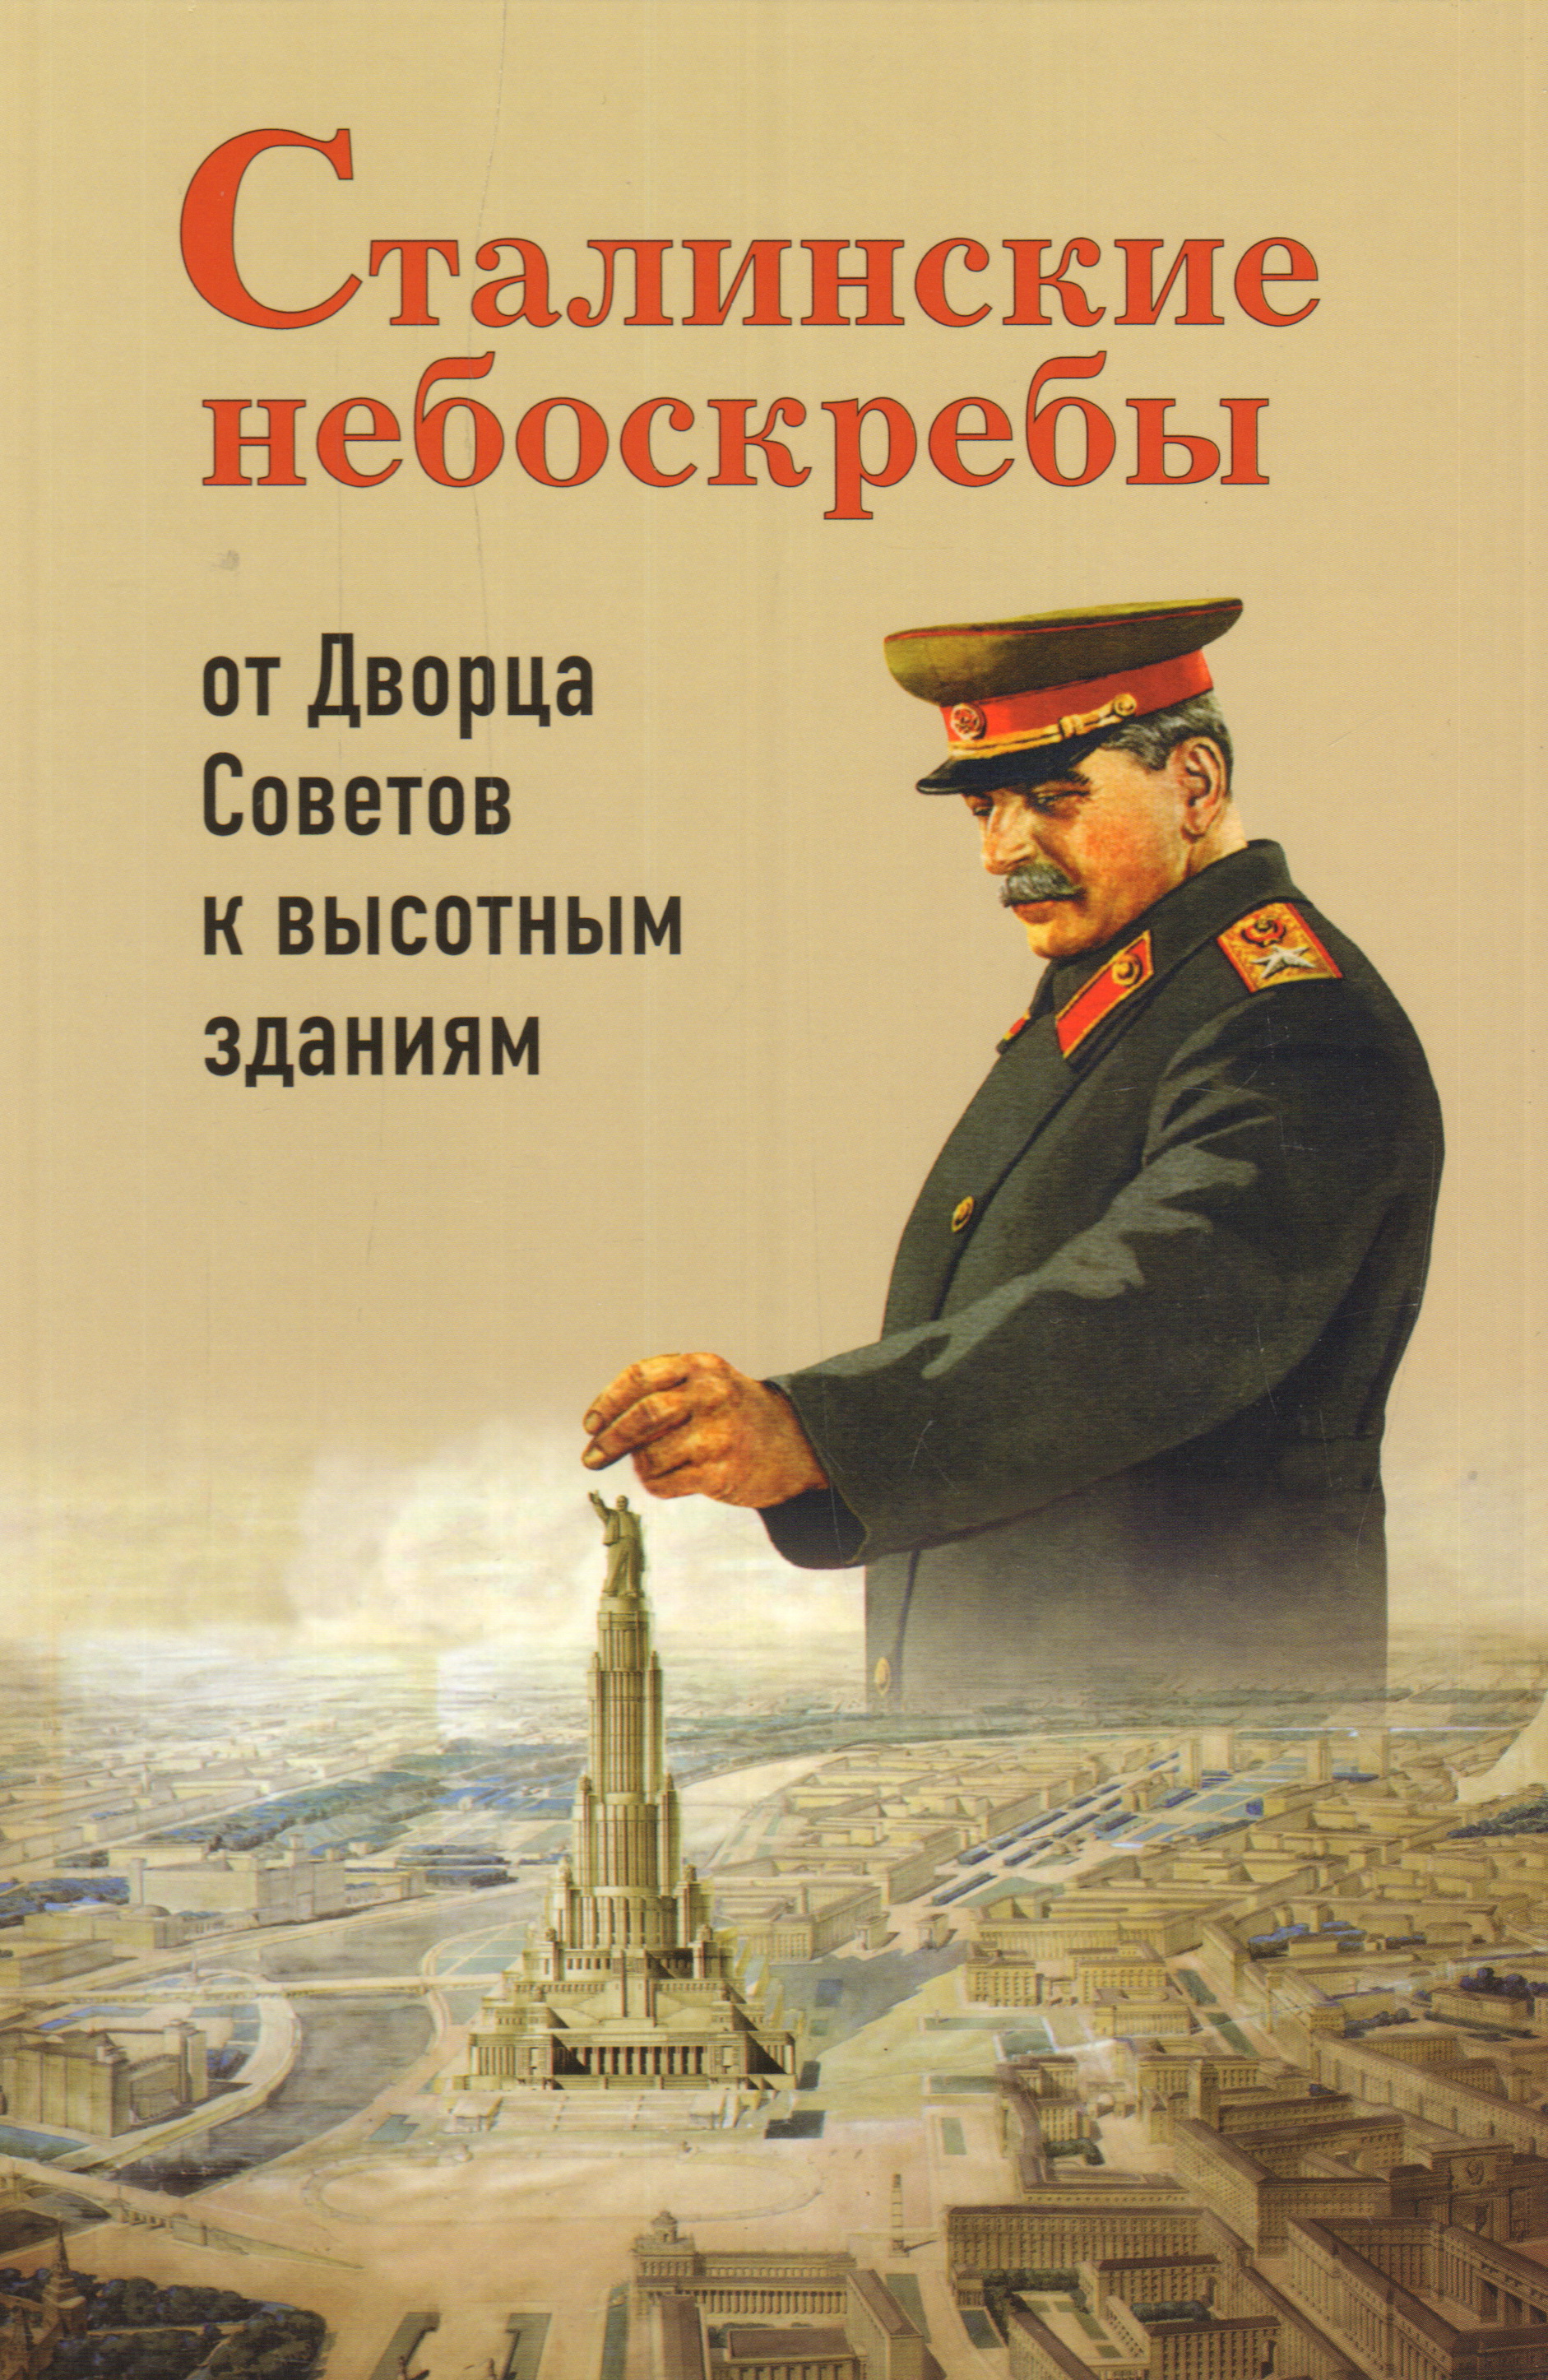 Сталинские небоскребы: от Дворца Советов к высотк